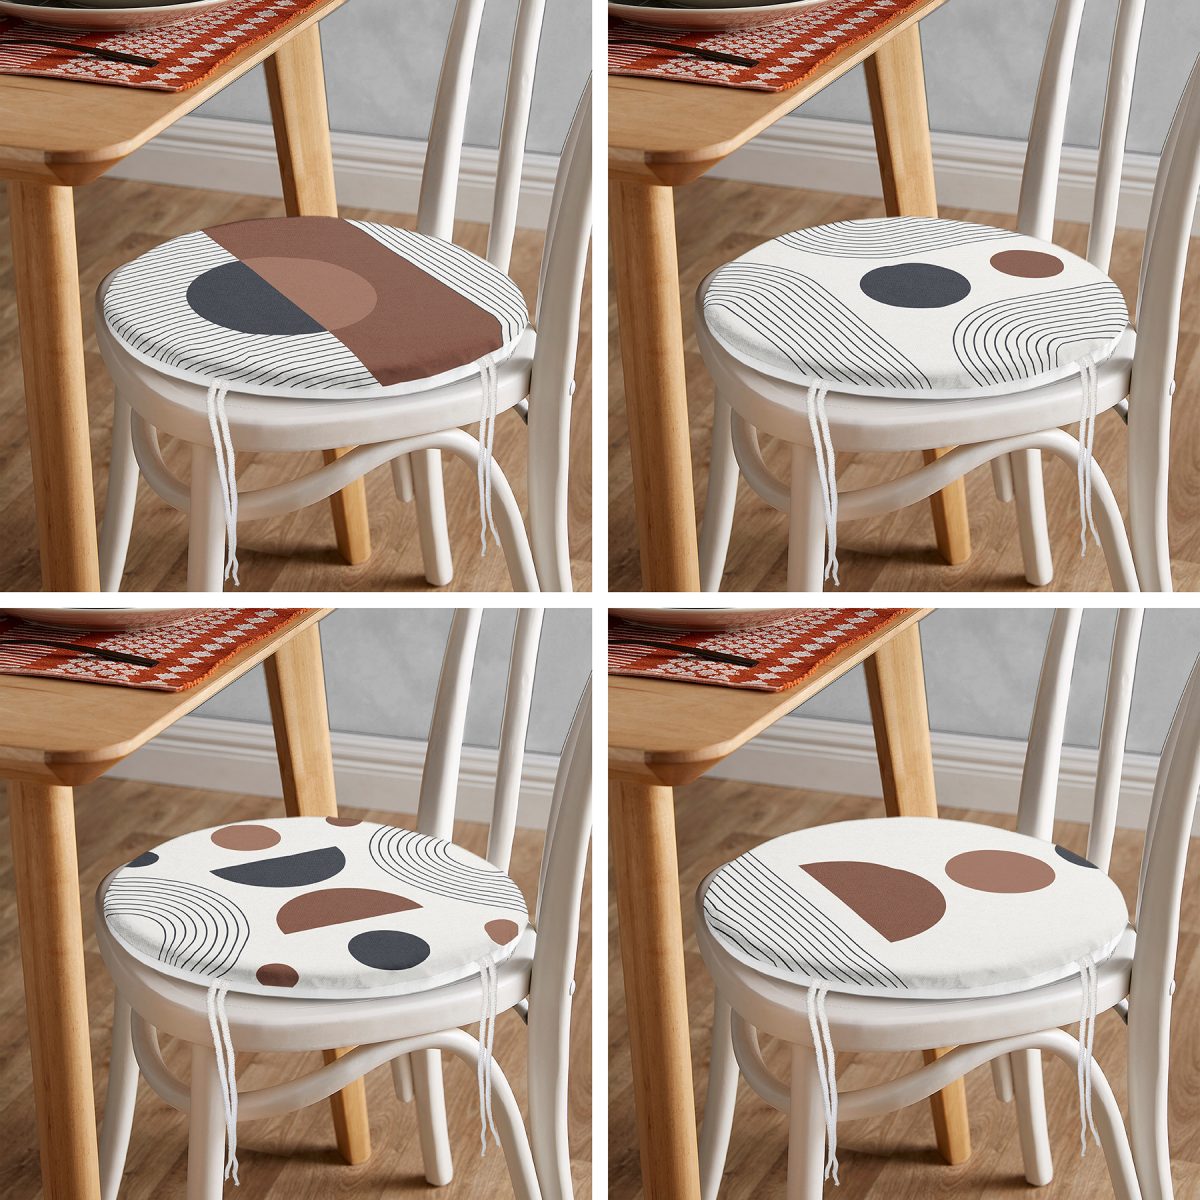 4'lü Özel Tasarım İskandinav Motifli Dijital Baskılı Modern Yuvarlak Fermuarlı Sandalye Minderi Seti Realhomes